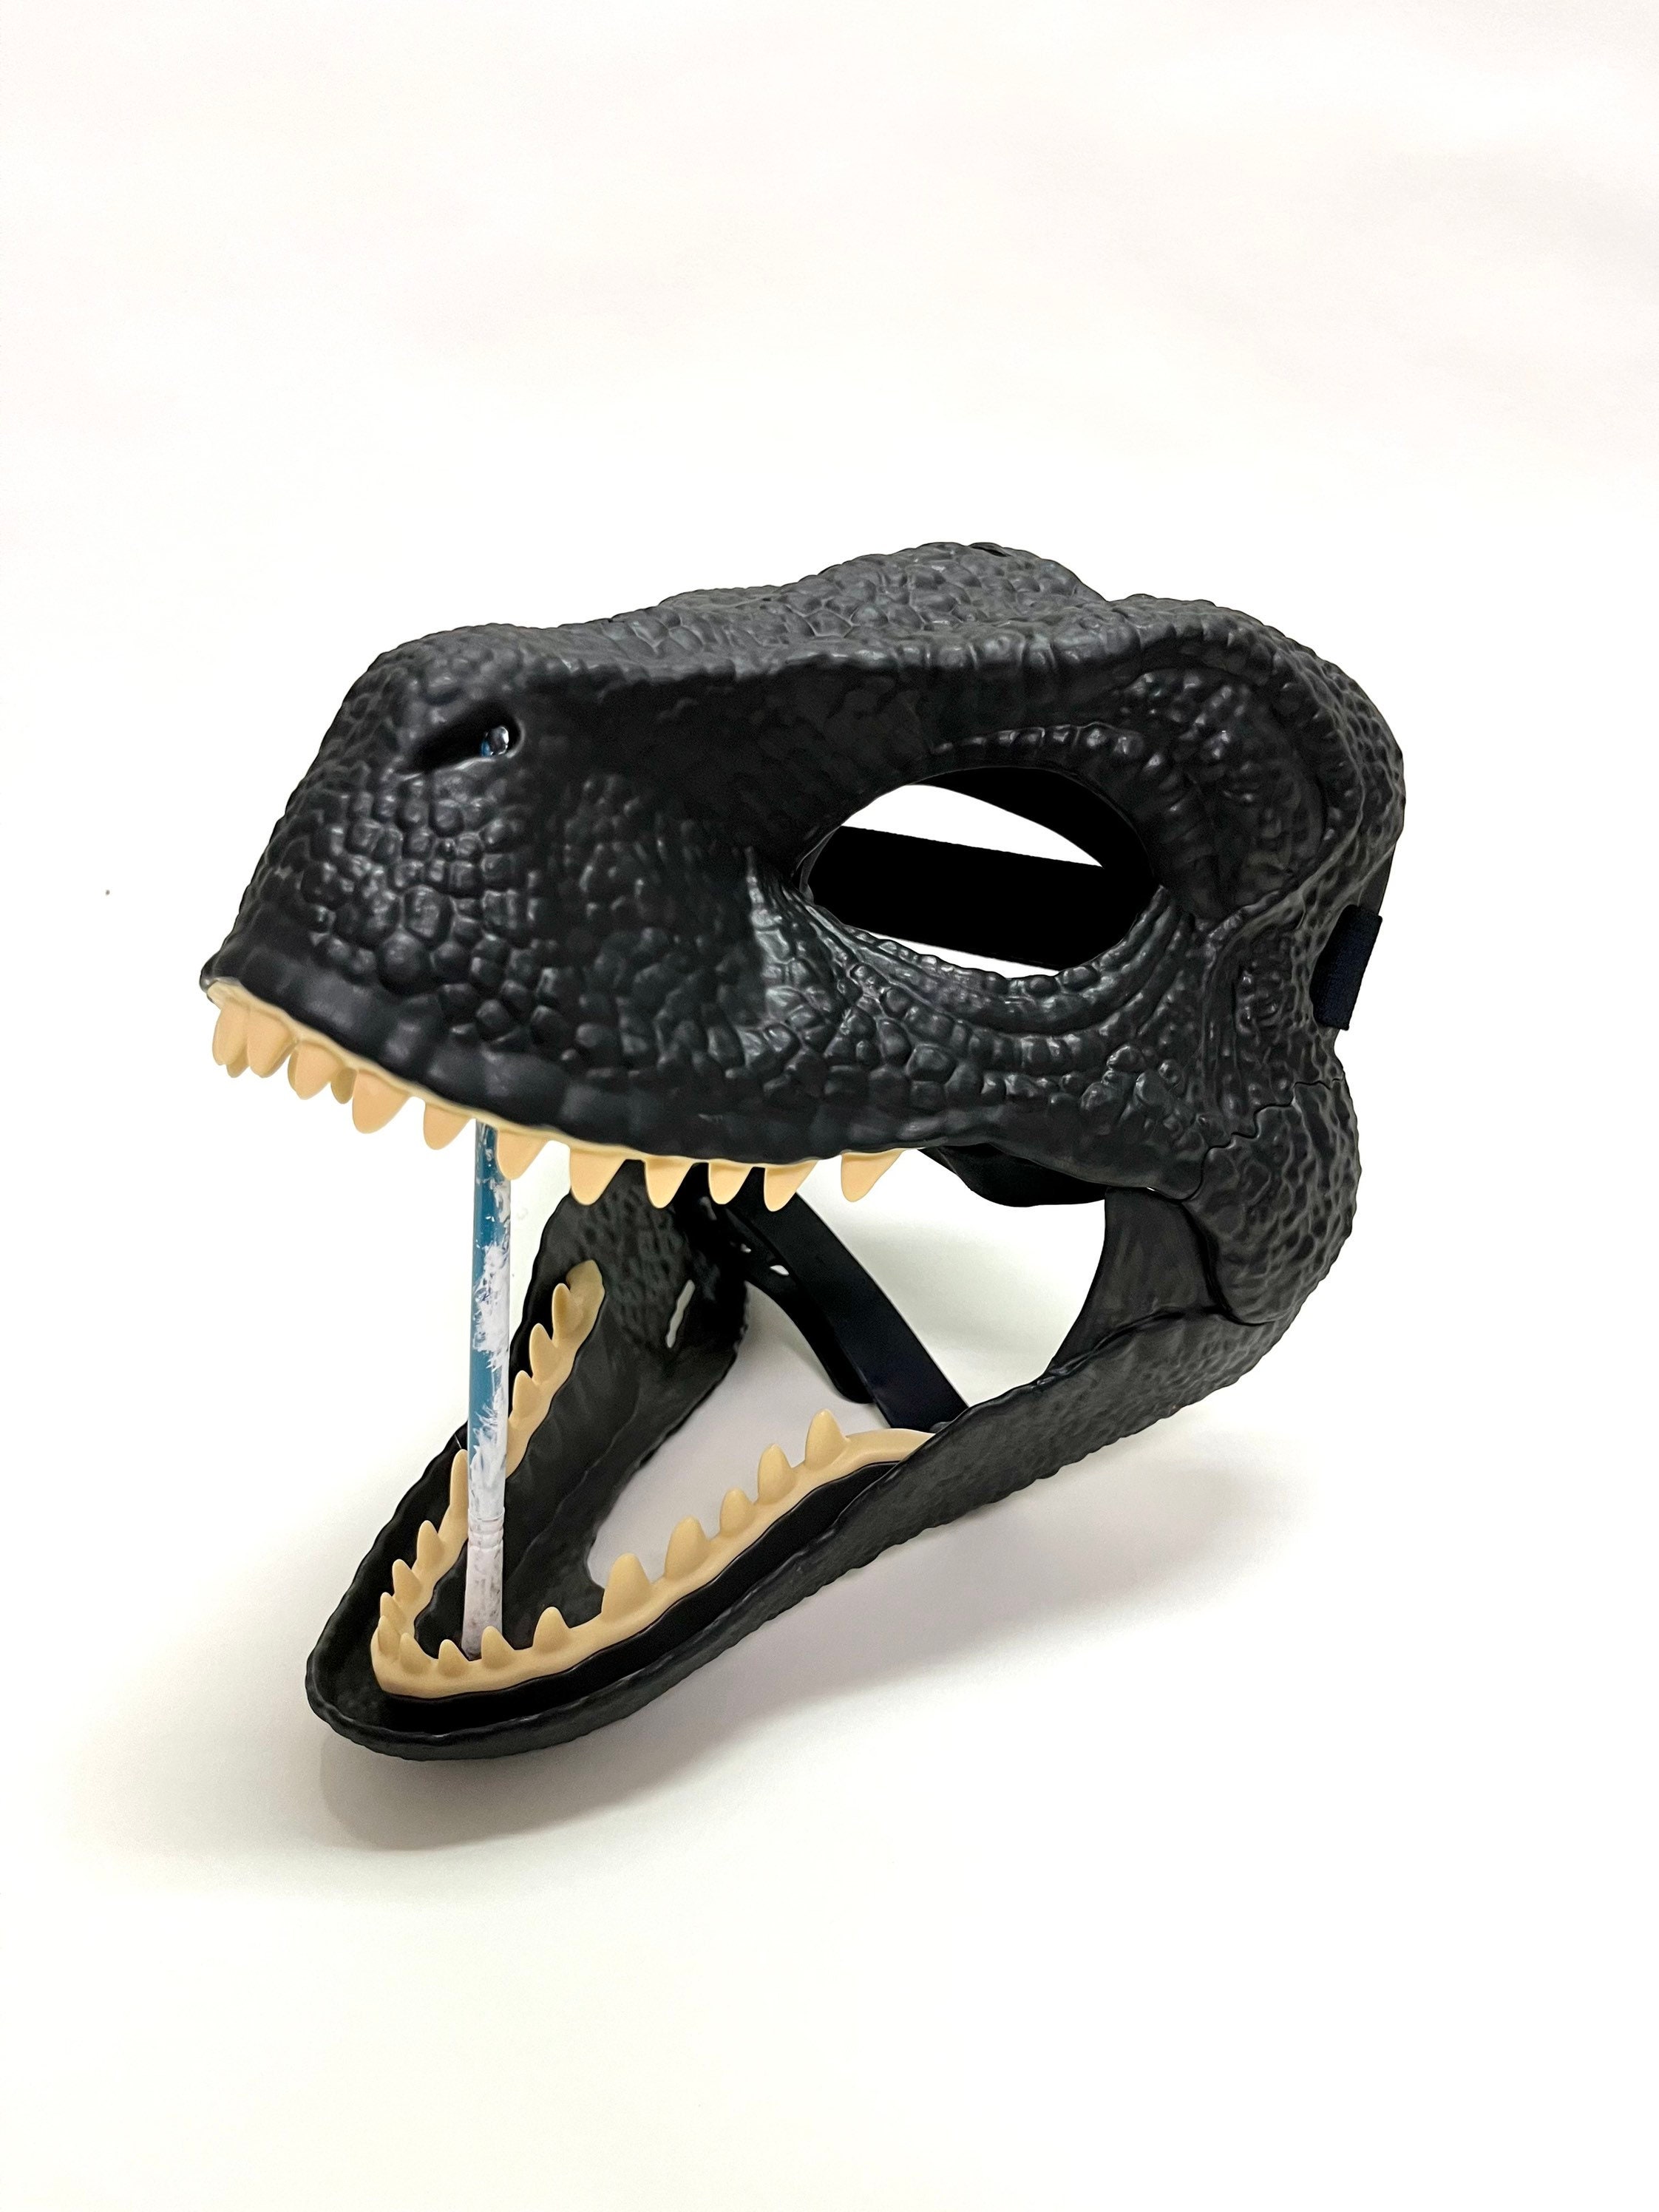 Raptor Mask - Etsy